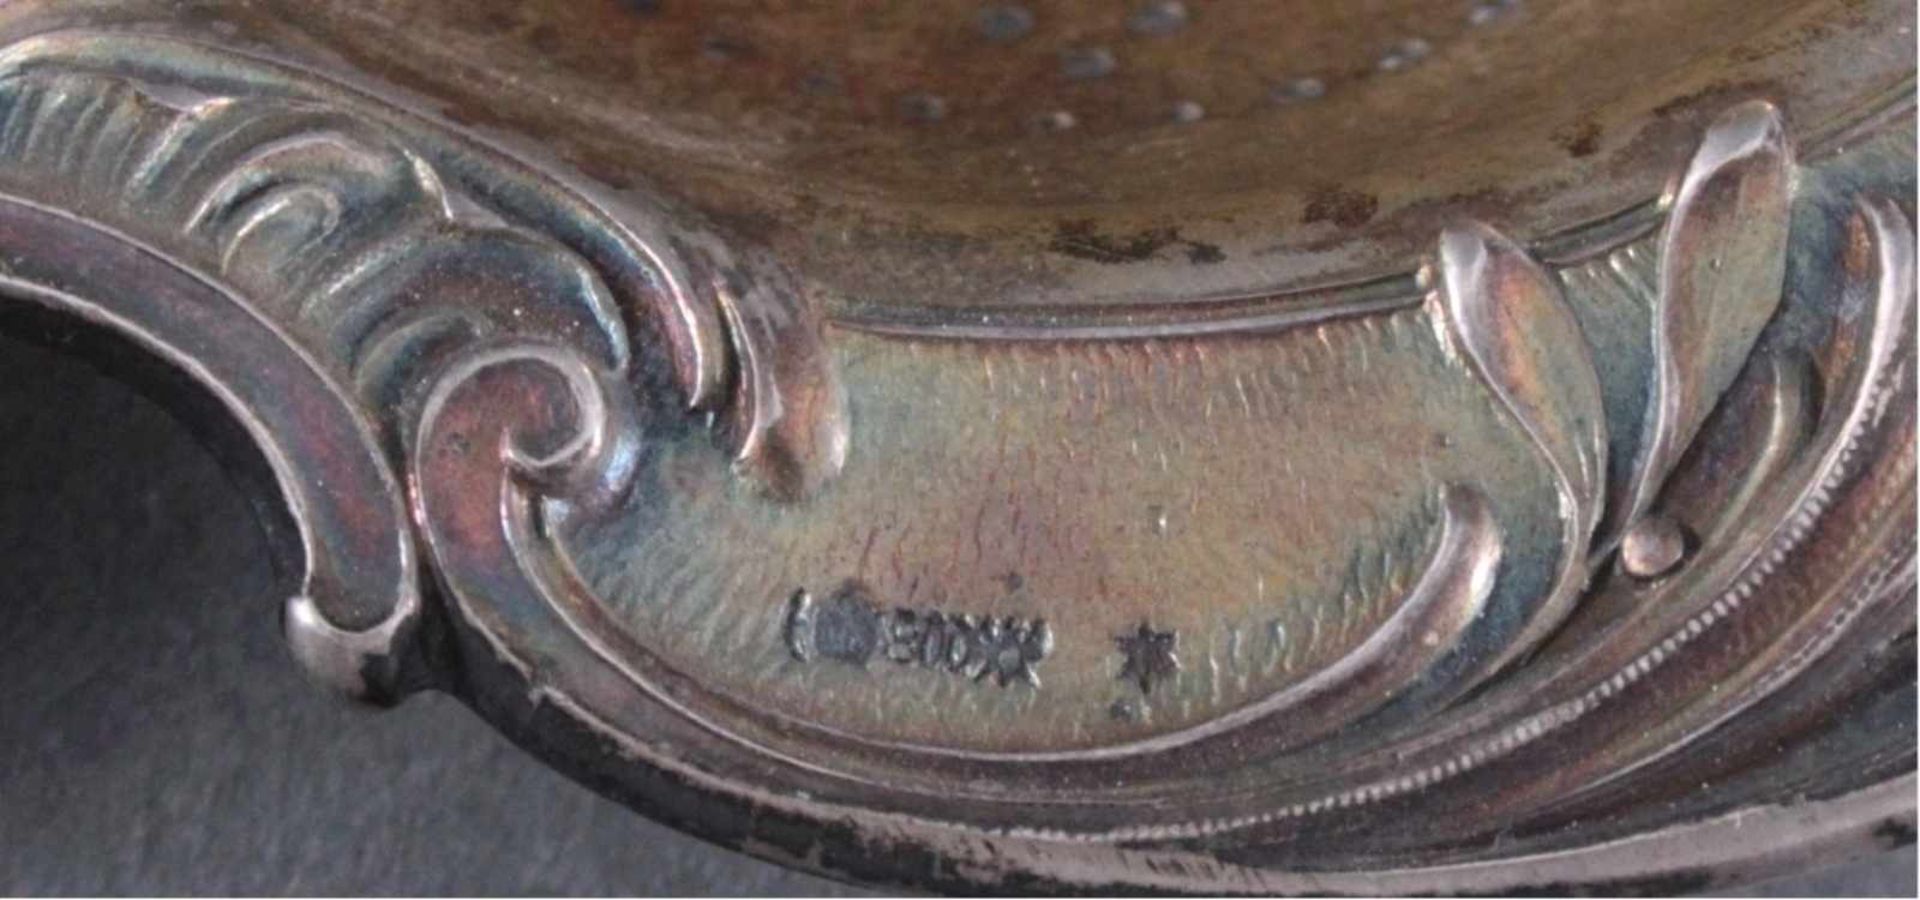 Silbernes Teesieb und Tee-EiReliefiertes Sieb, innen vergoldet, am Griff mit MonogrammCH, punziert - Image 3 of 4